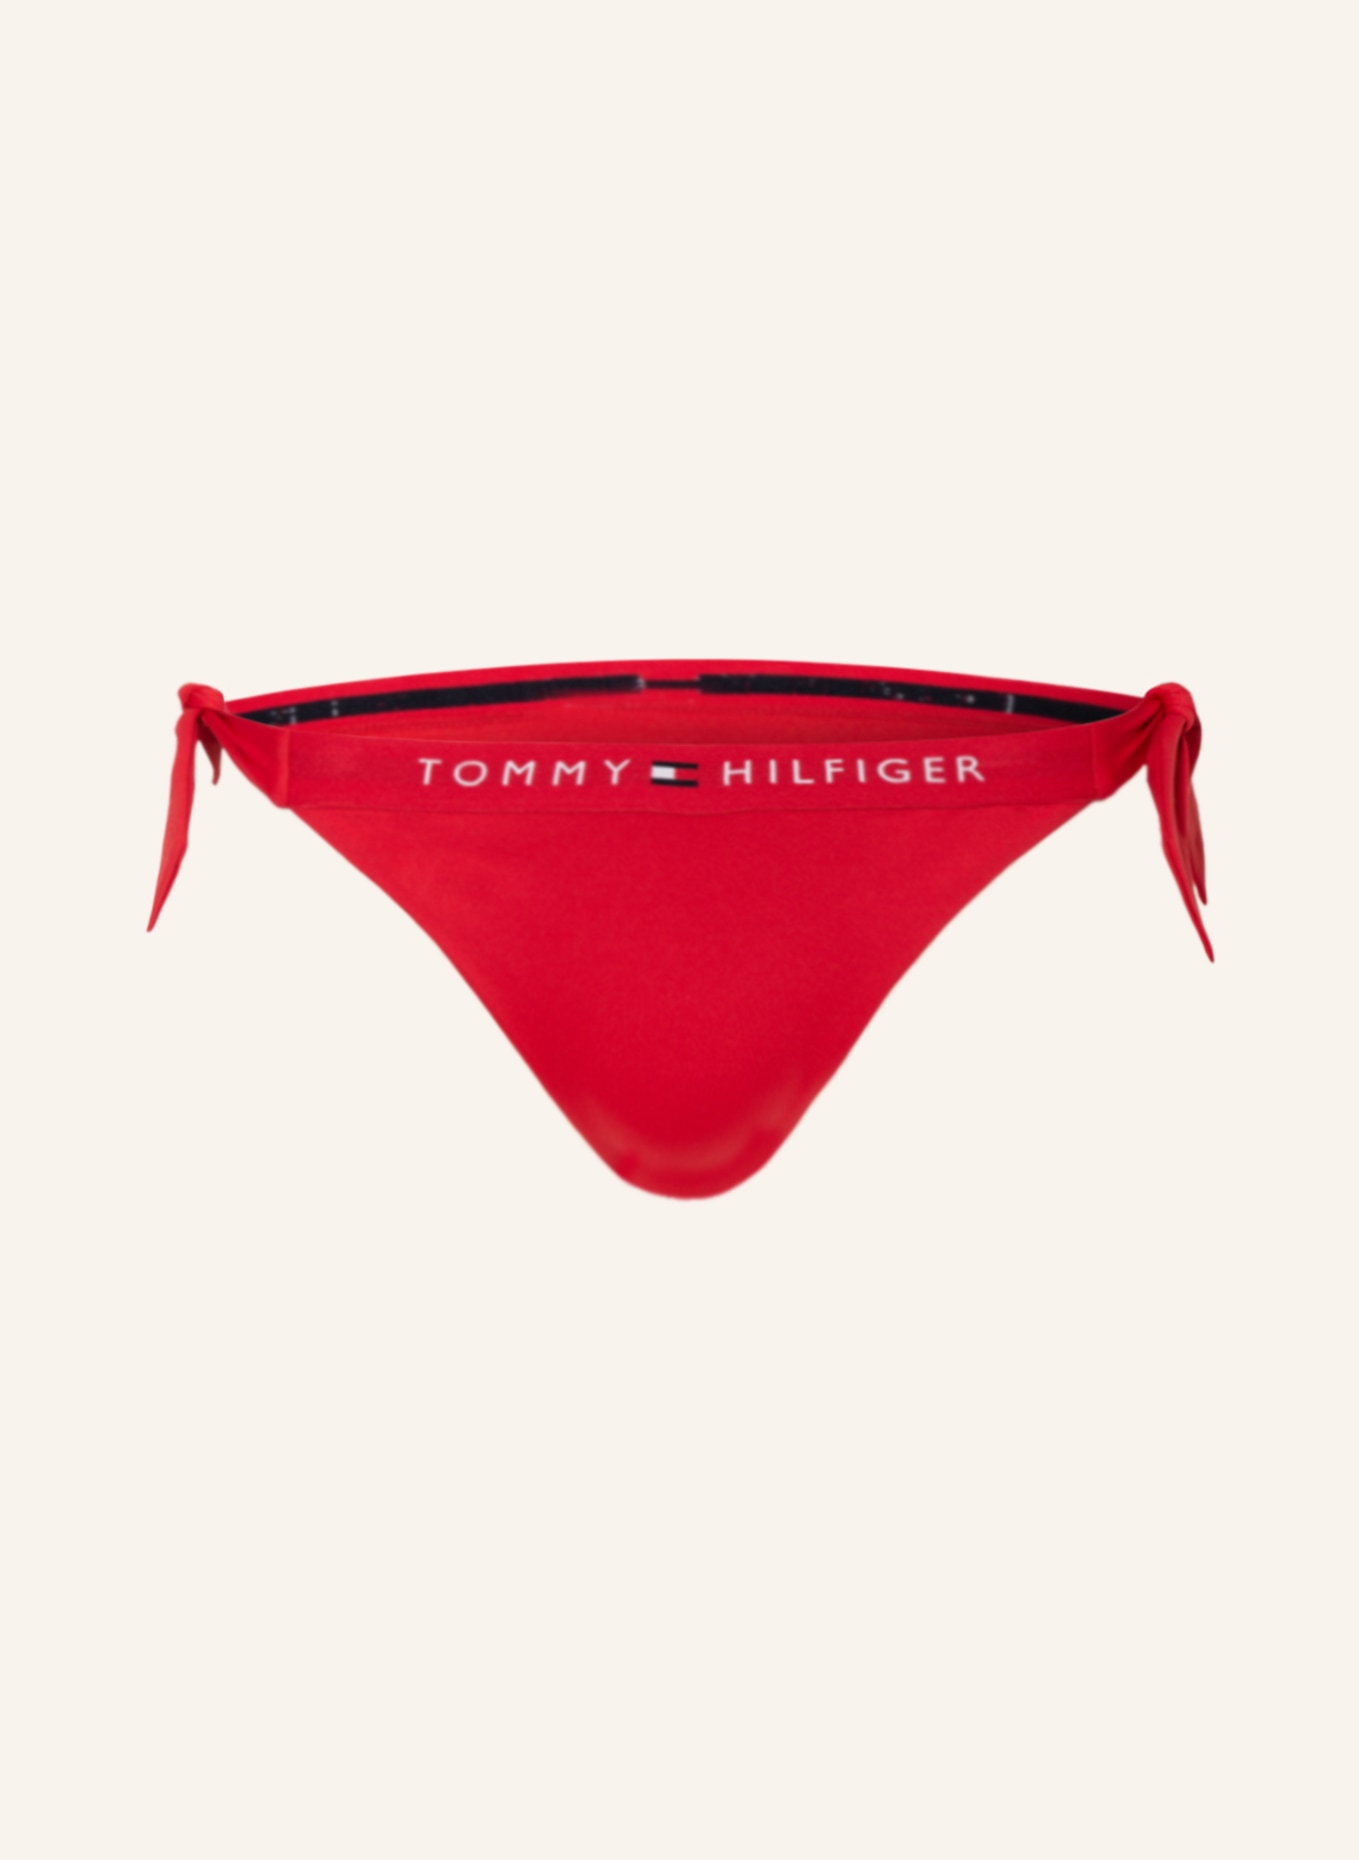 TOMMY HILFIGER Triangel-Bikini-Hose, Farbe: ROT (Bild 1)